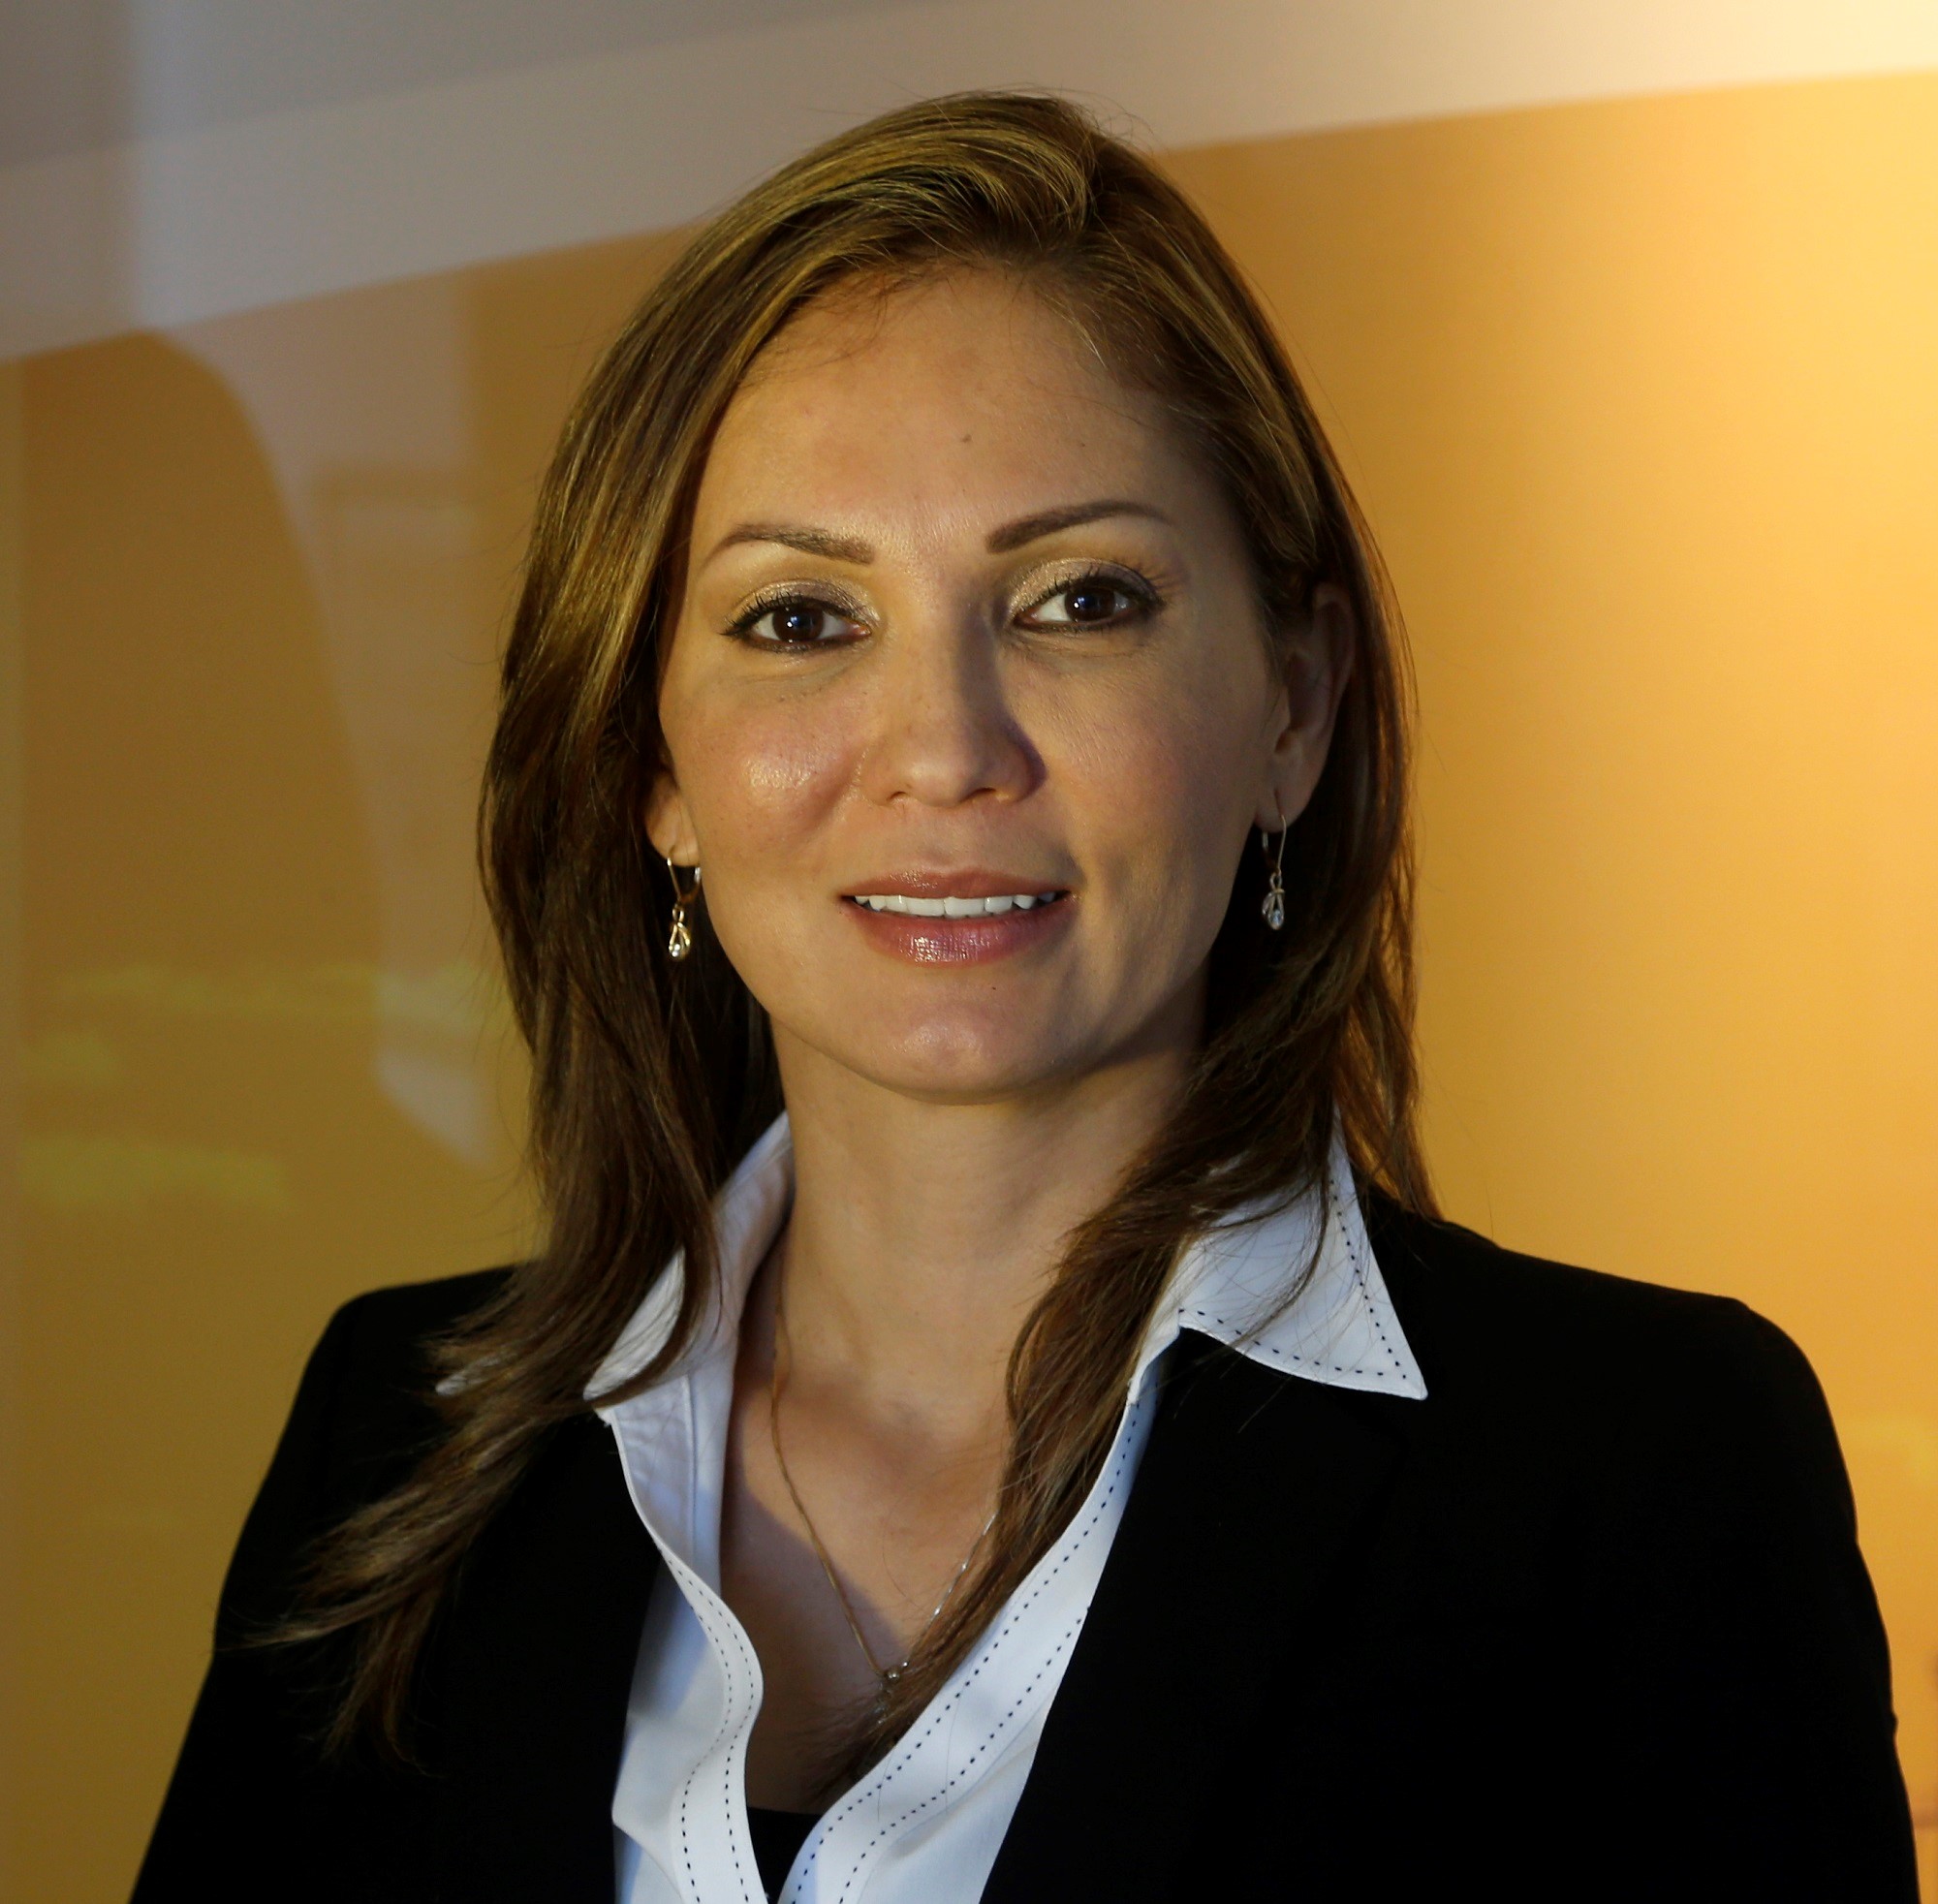 Speaker: Patricia Vega